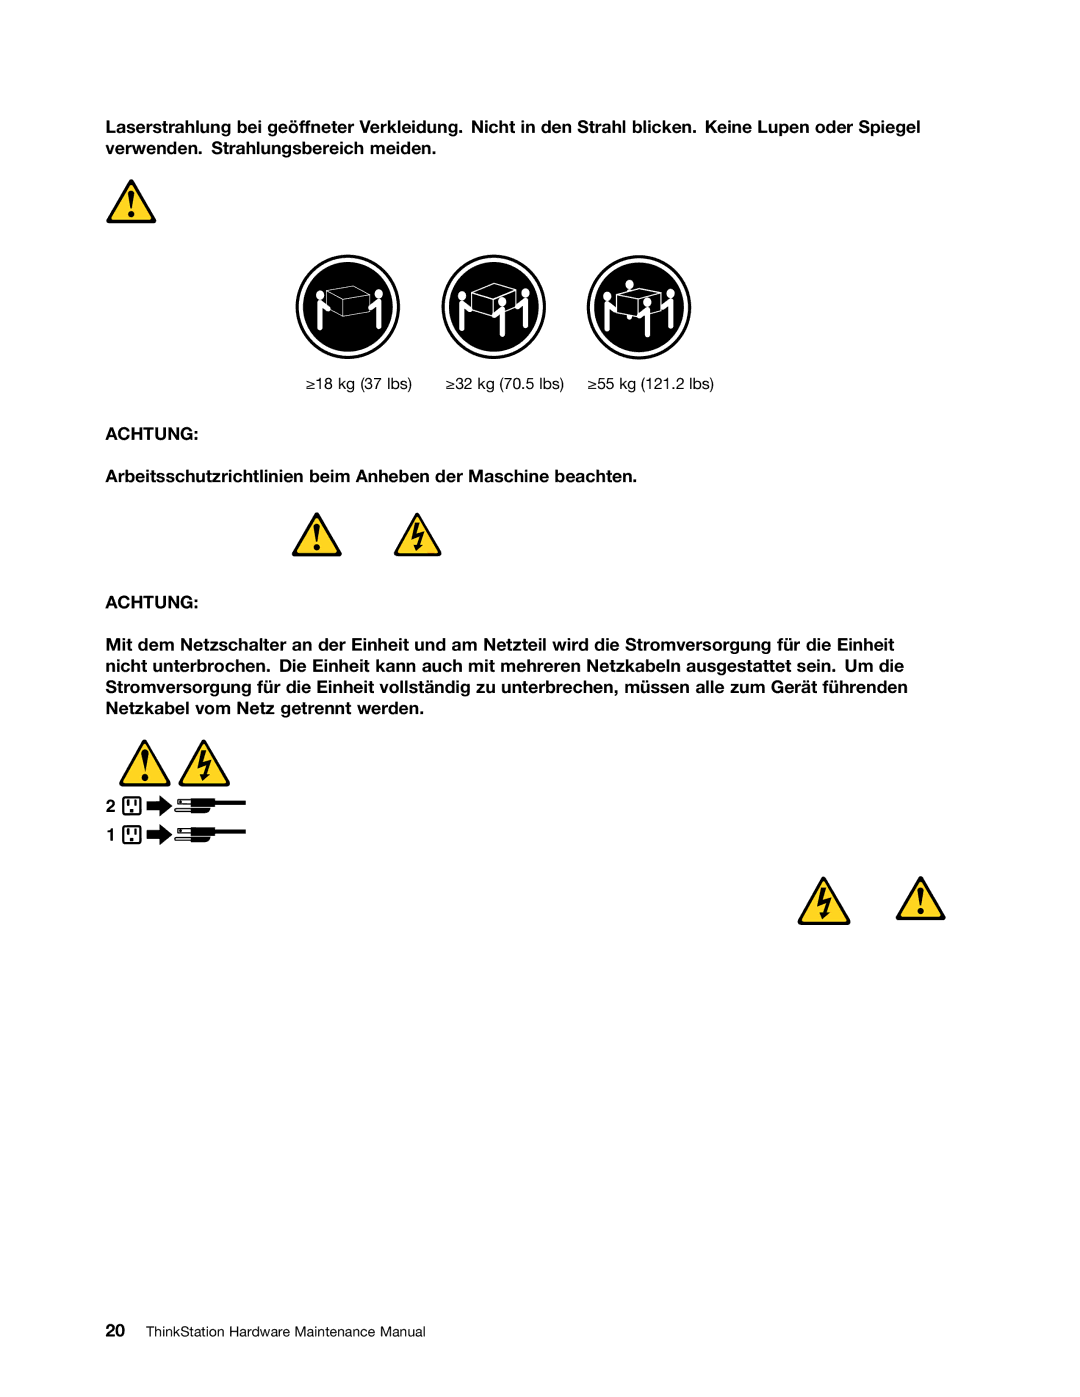 Lenovo 4229, 4223, 4228 manual Arbeitsschutzrichtlinien beim Anheben der Maschine beachten 